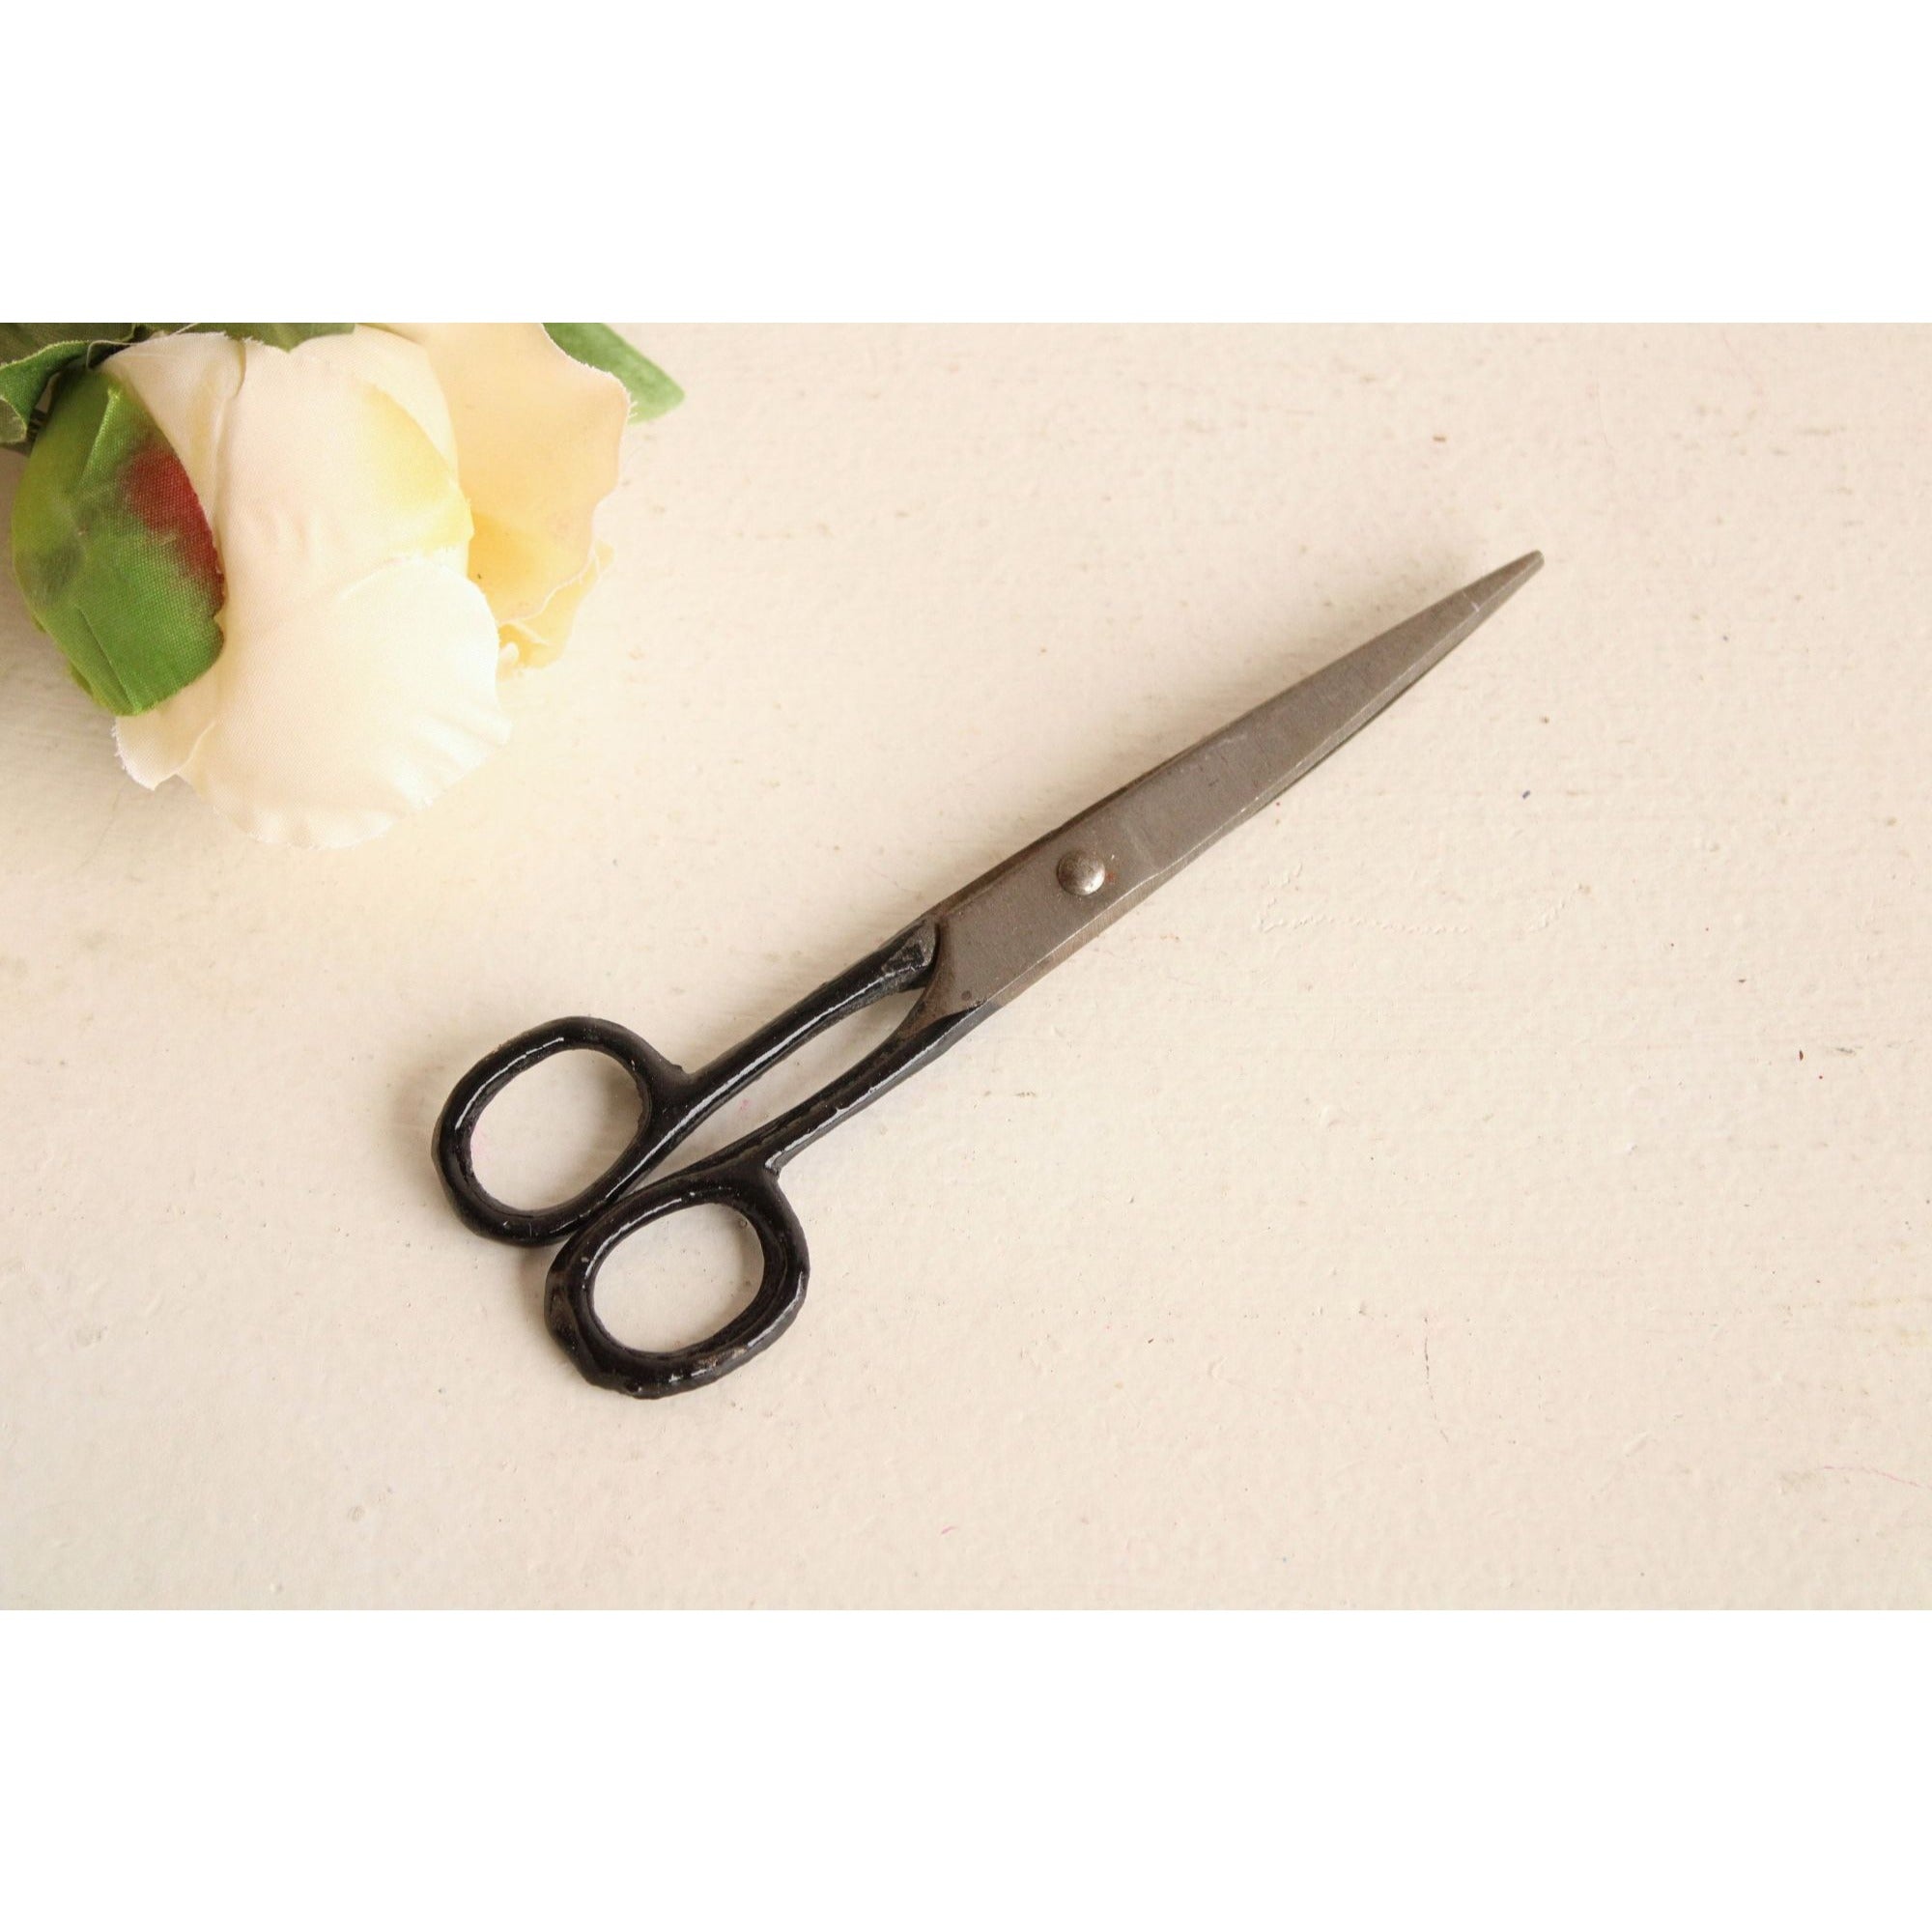 Vintage Black Handle Scissors Pair of Old Sewing Shears Junk